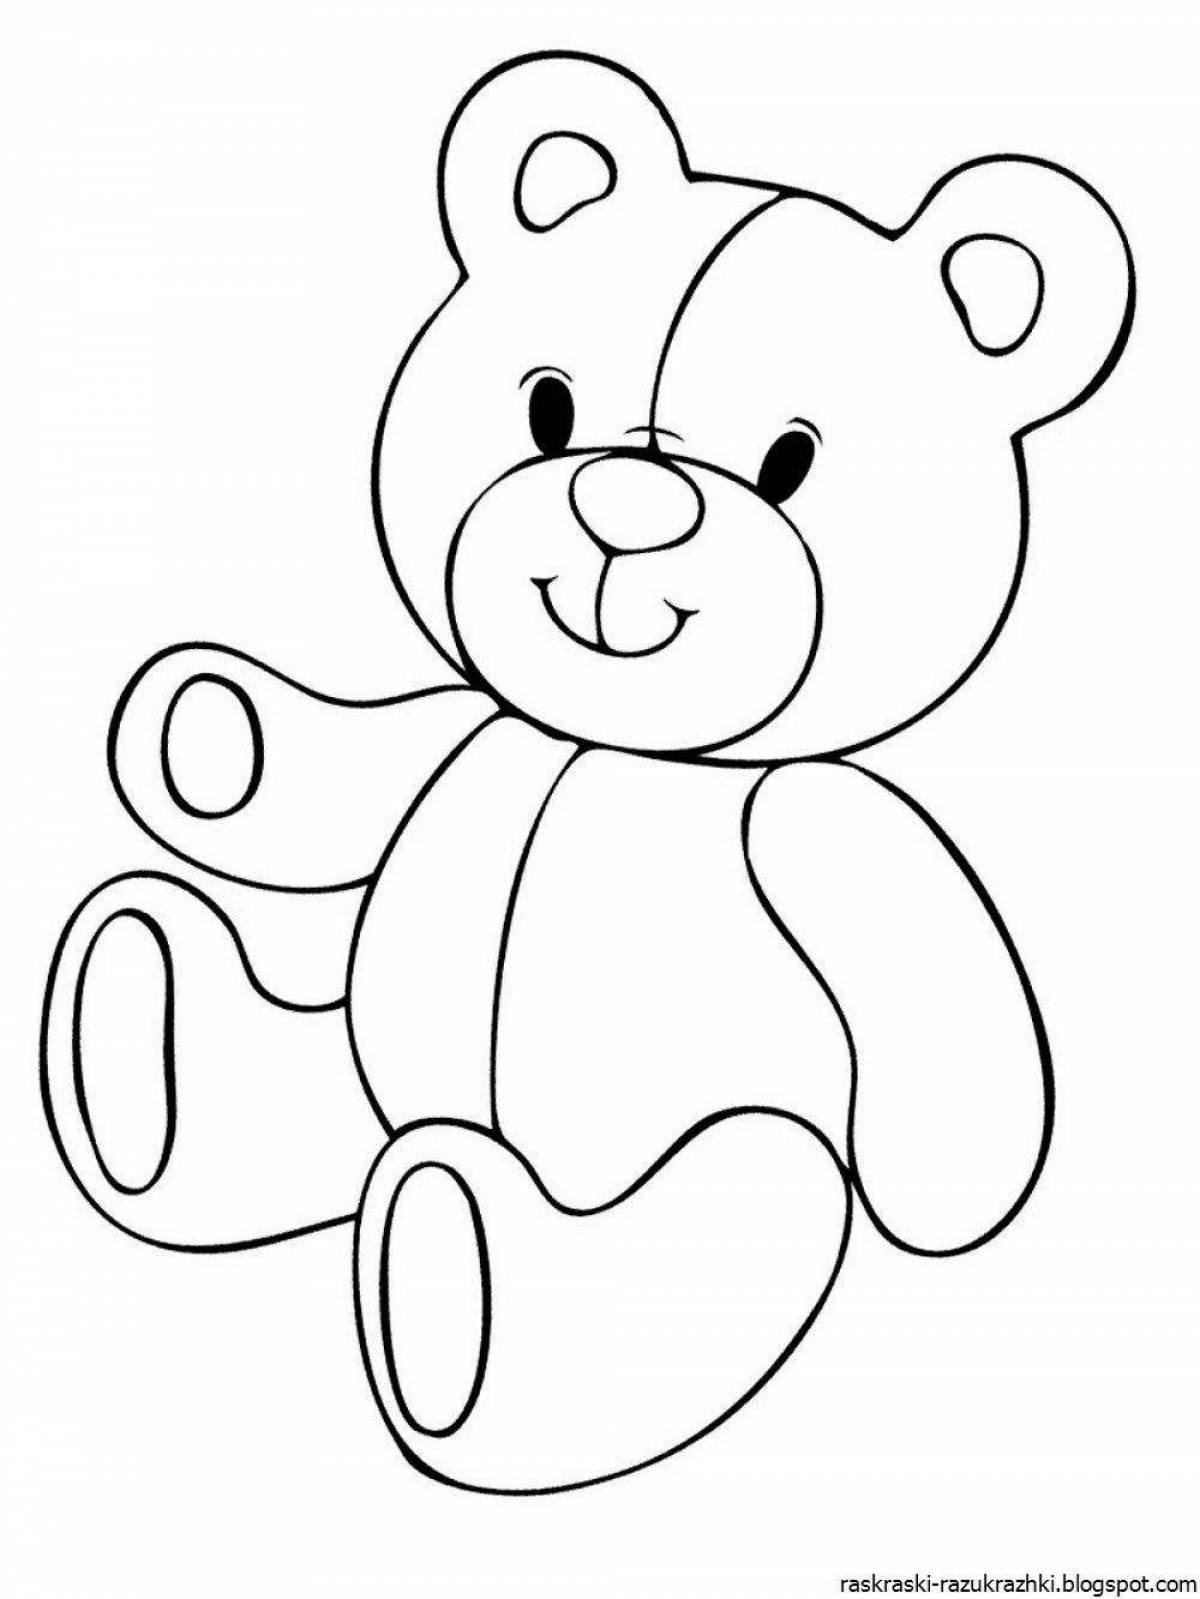 Joyful teddy bear coloring book for kids